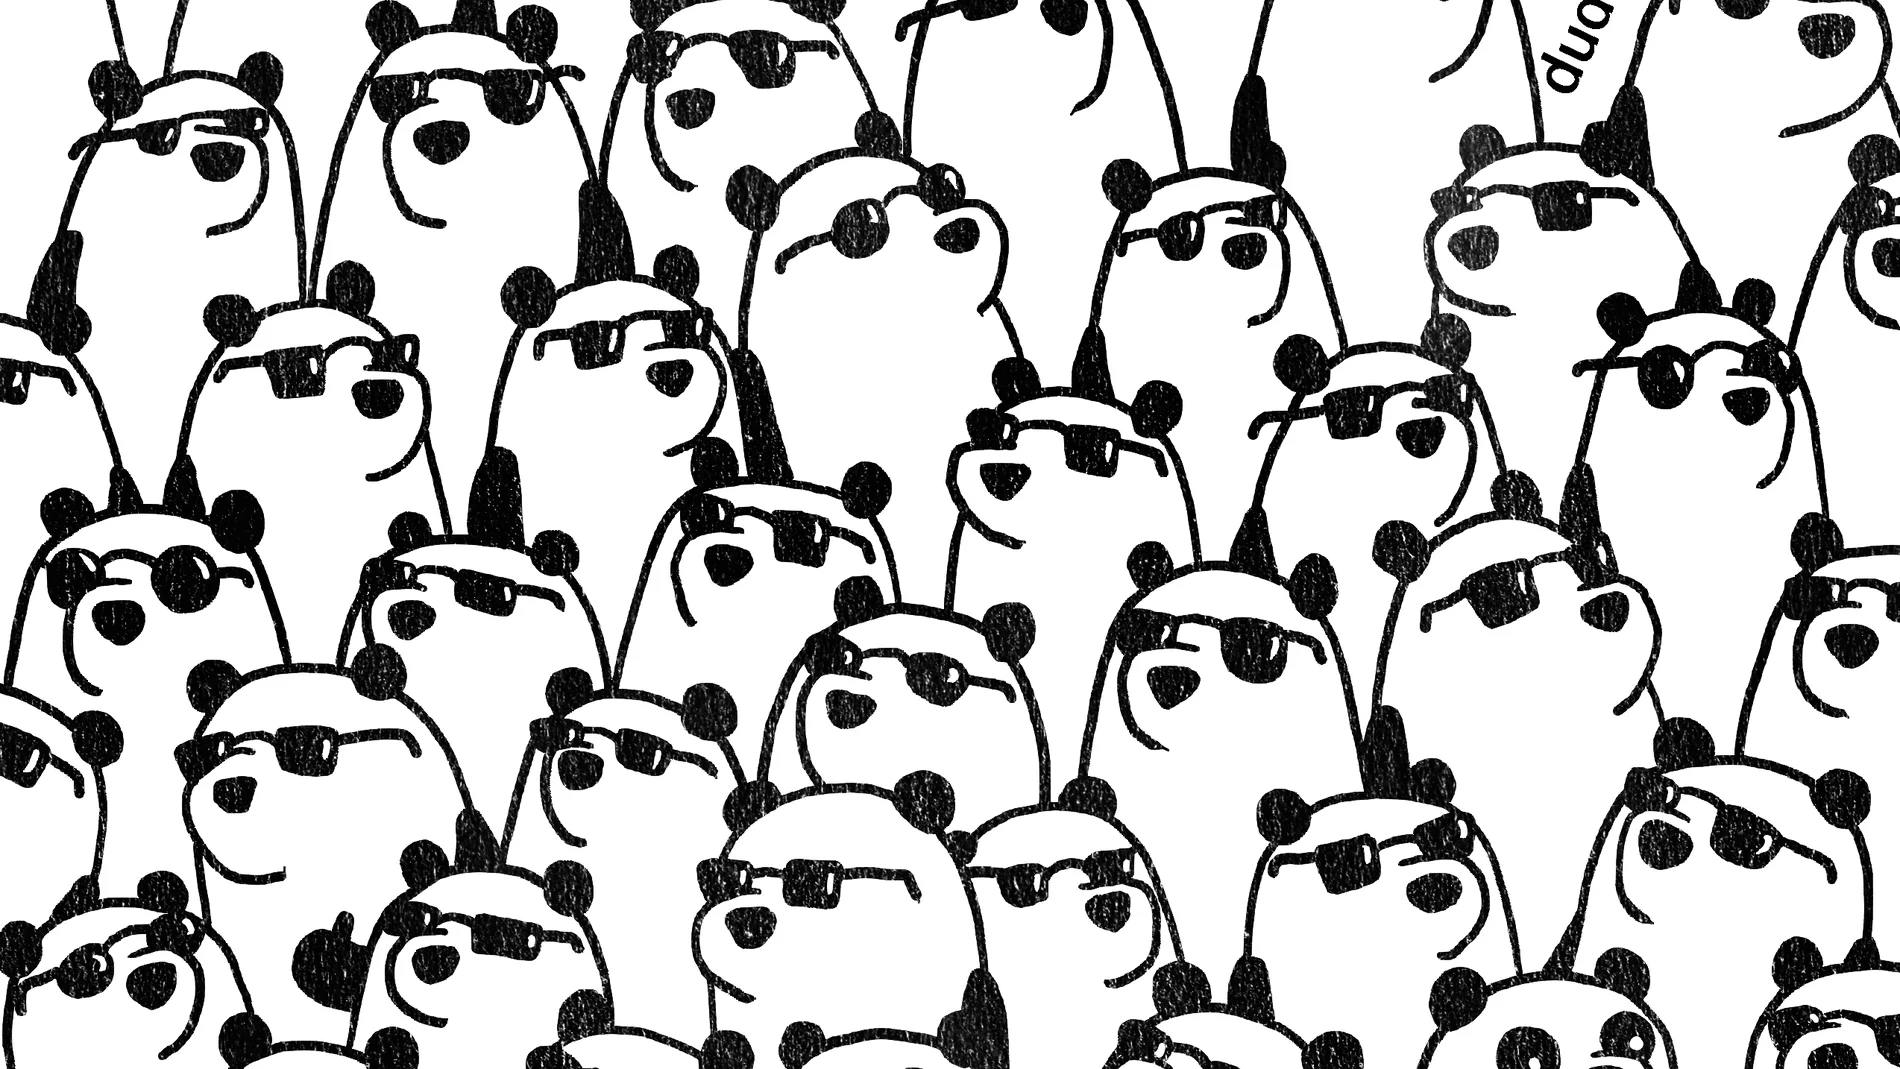 Encuentra los tres osos panda que no tienen gafas de sol en el dibujo